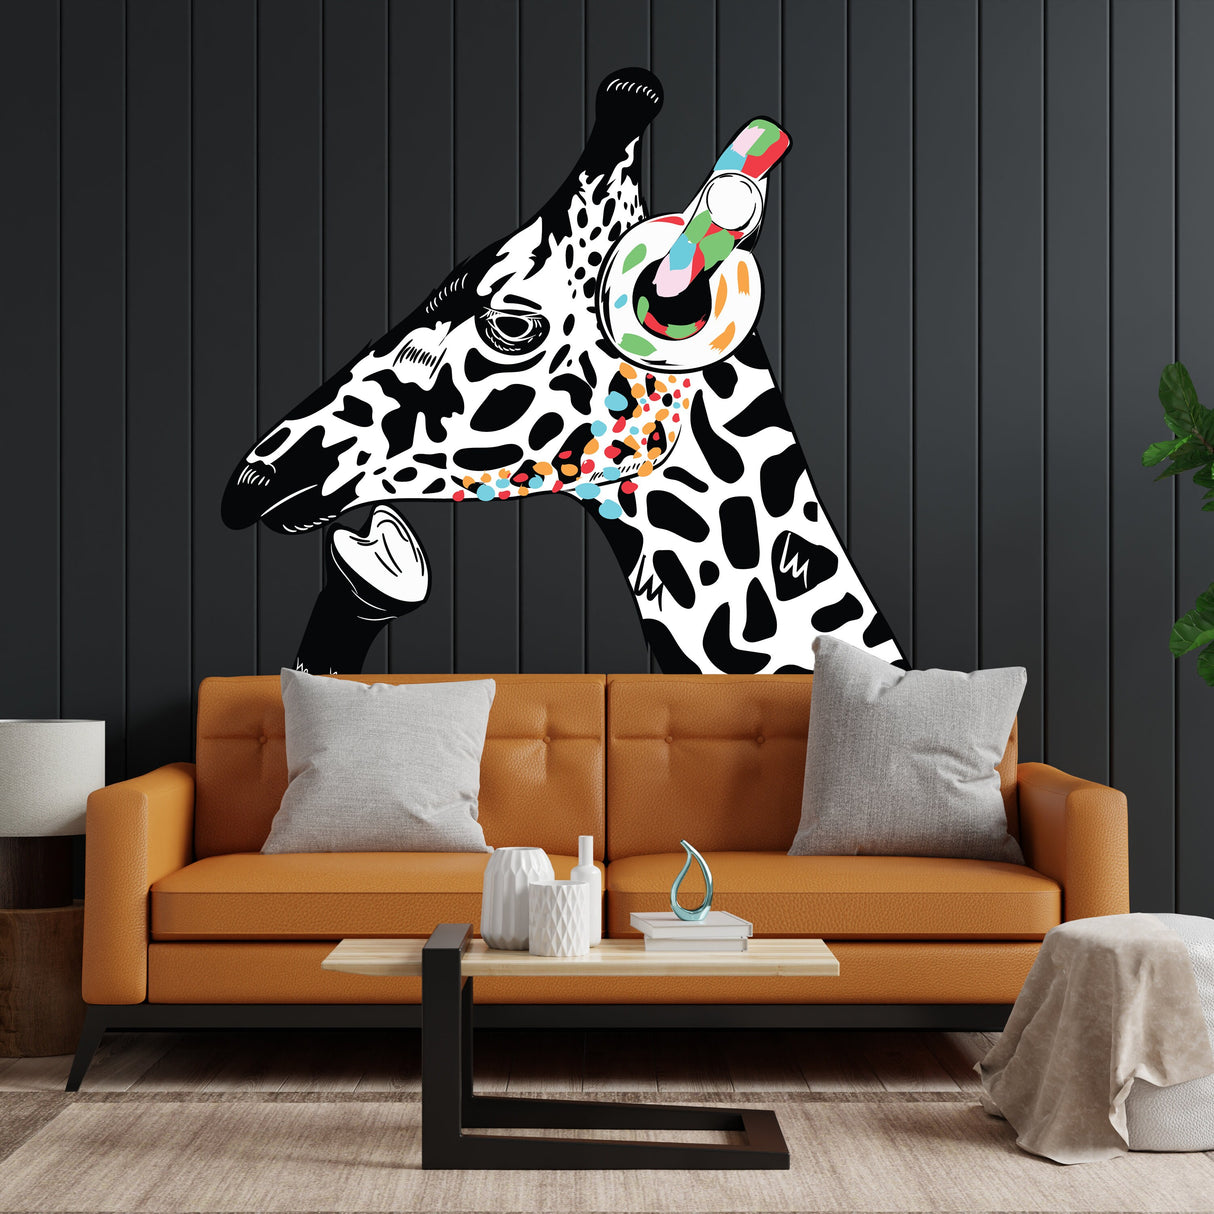 Thinking Giraffe Sticker - Inspired by Banksy Art Vinyl Dj Baksy Wall Decal